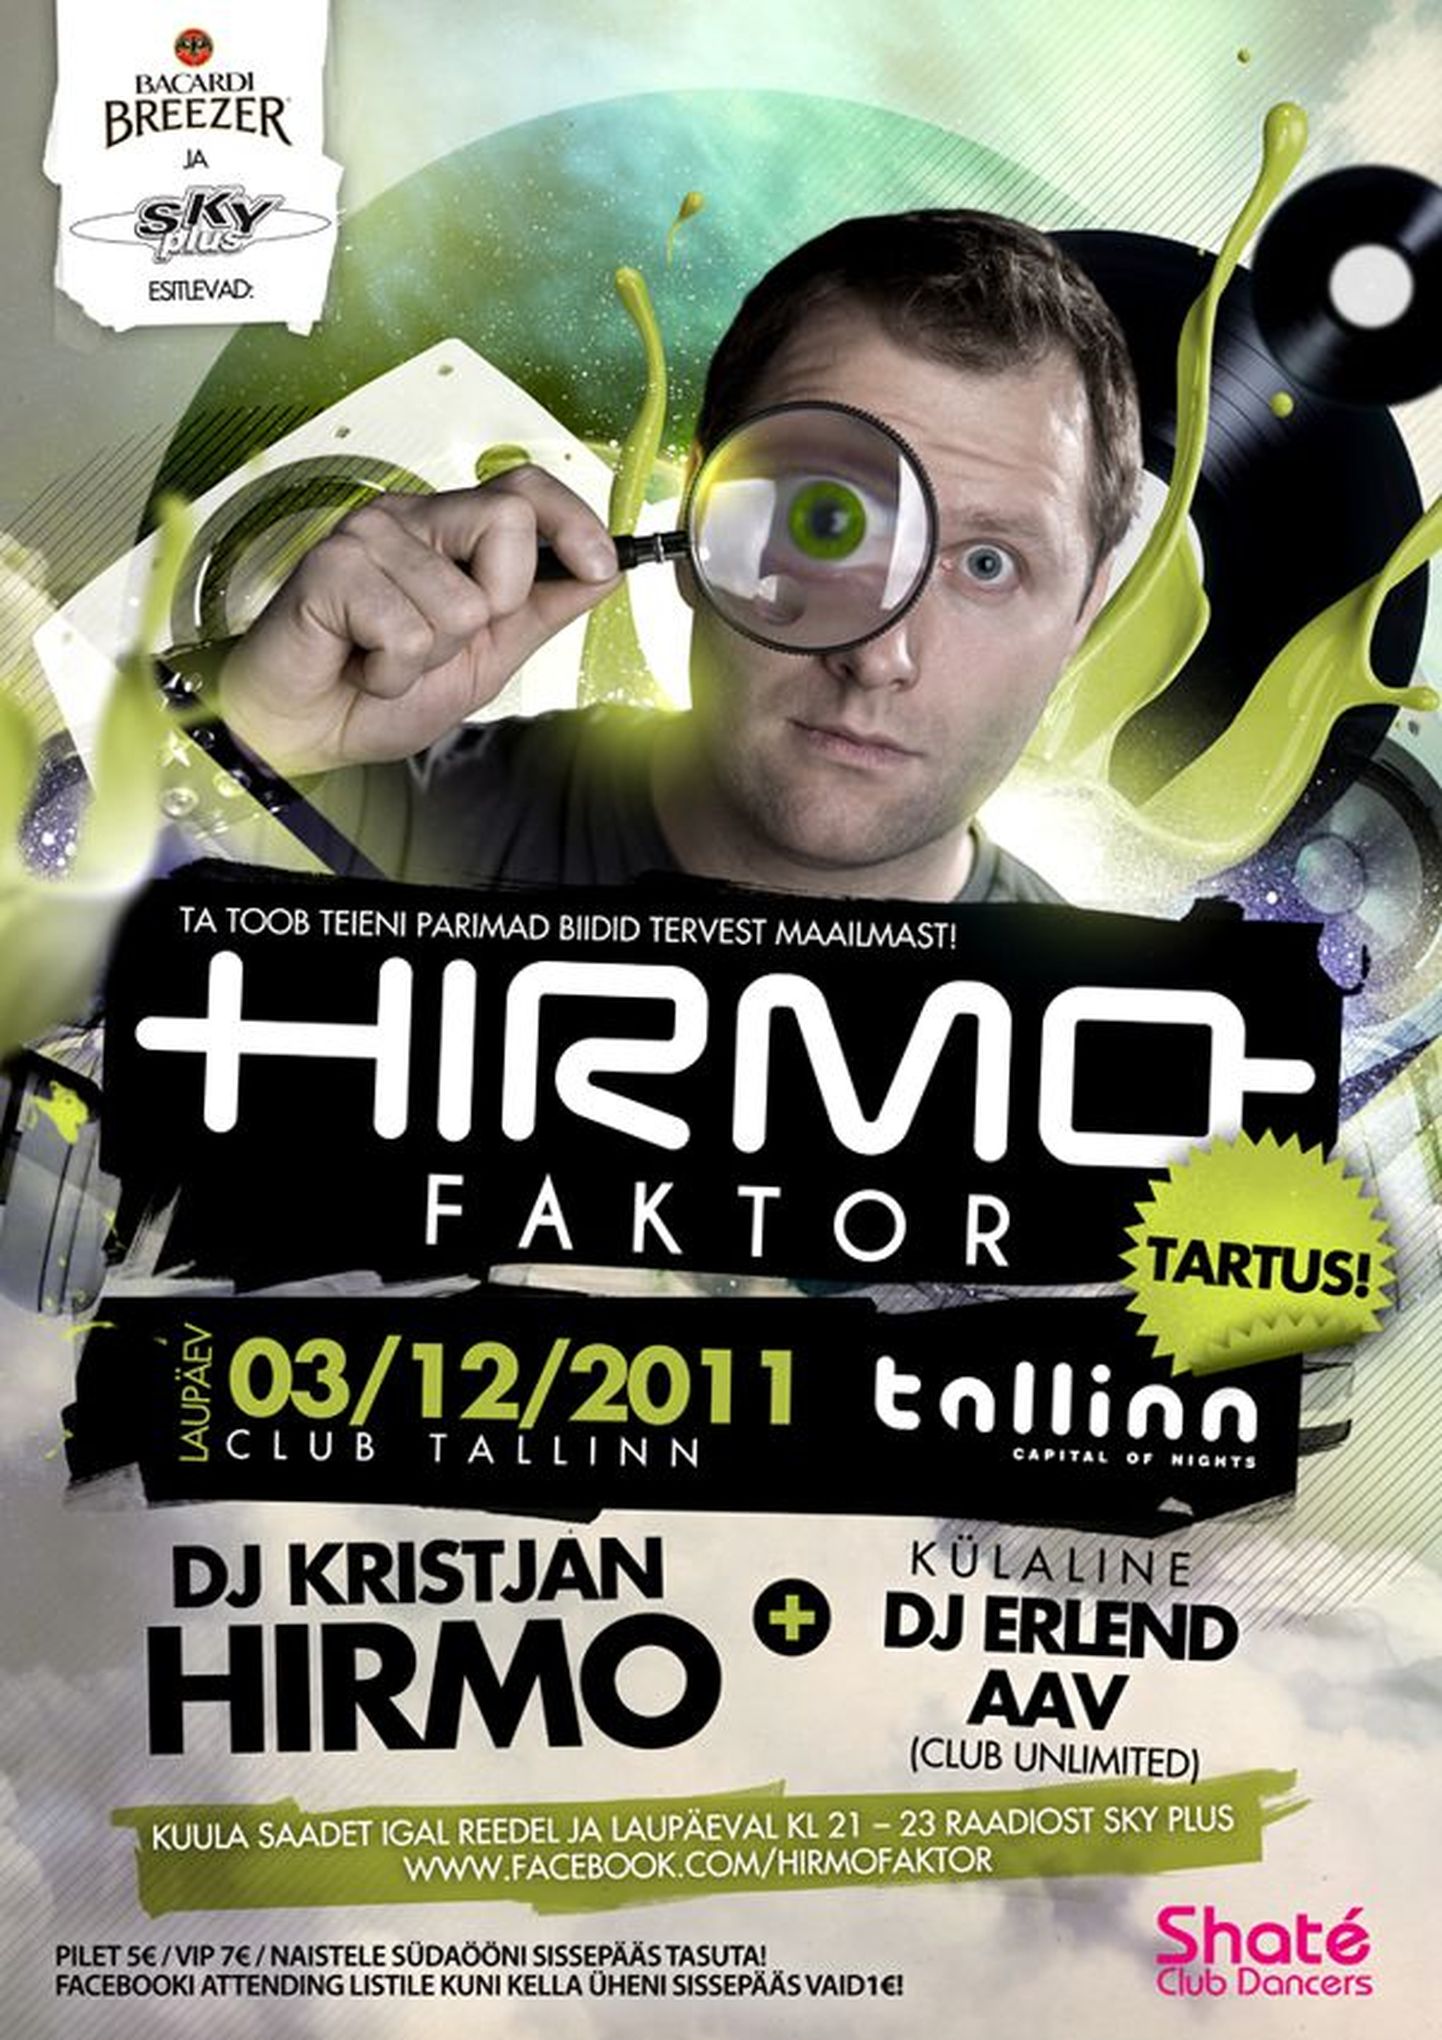 Menukas raadioshow HirmoFaktor tungib selle nädalavahetusel raadiojaama seinte vahelt ööklubisse Tallinn!